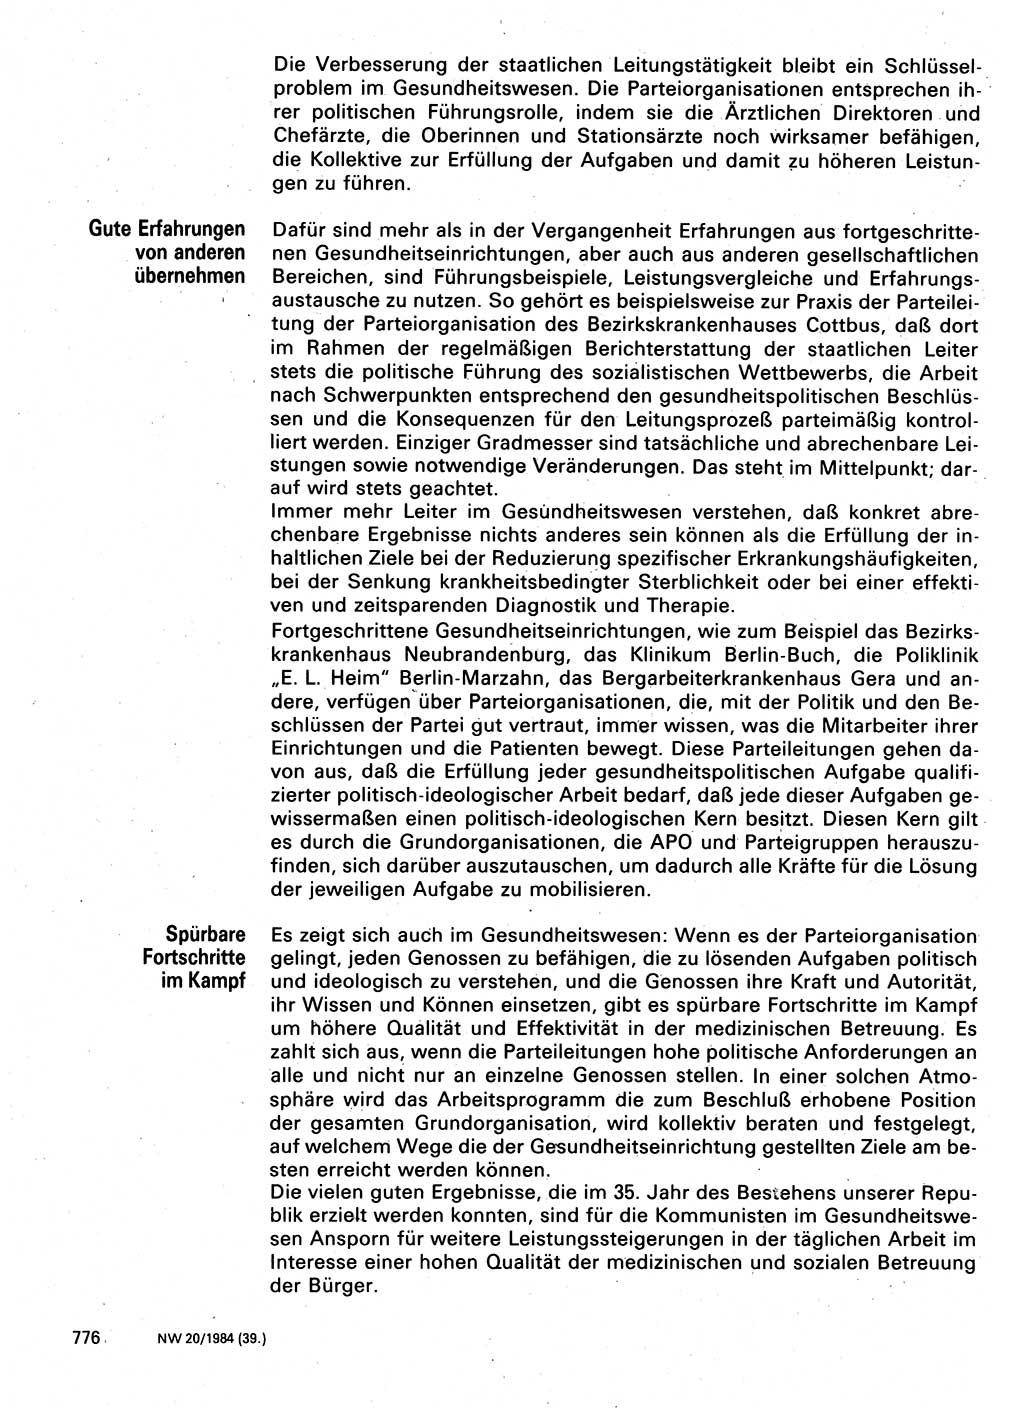 Neuer Weg (NW), Organ des Zentralkomitees (ZK) der SED (Sozialistische Einheitspartei Deutschlands) für Fragen des Parteilebens, 39. Jahrgang [Deutsche Demokratische Republik (DDR)] 1984, Seite 776 (NW ZK SED DDR 1984, S. 776)